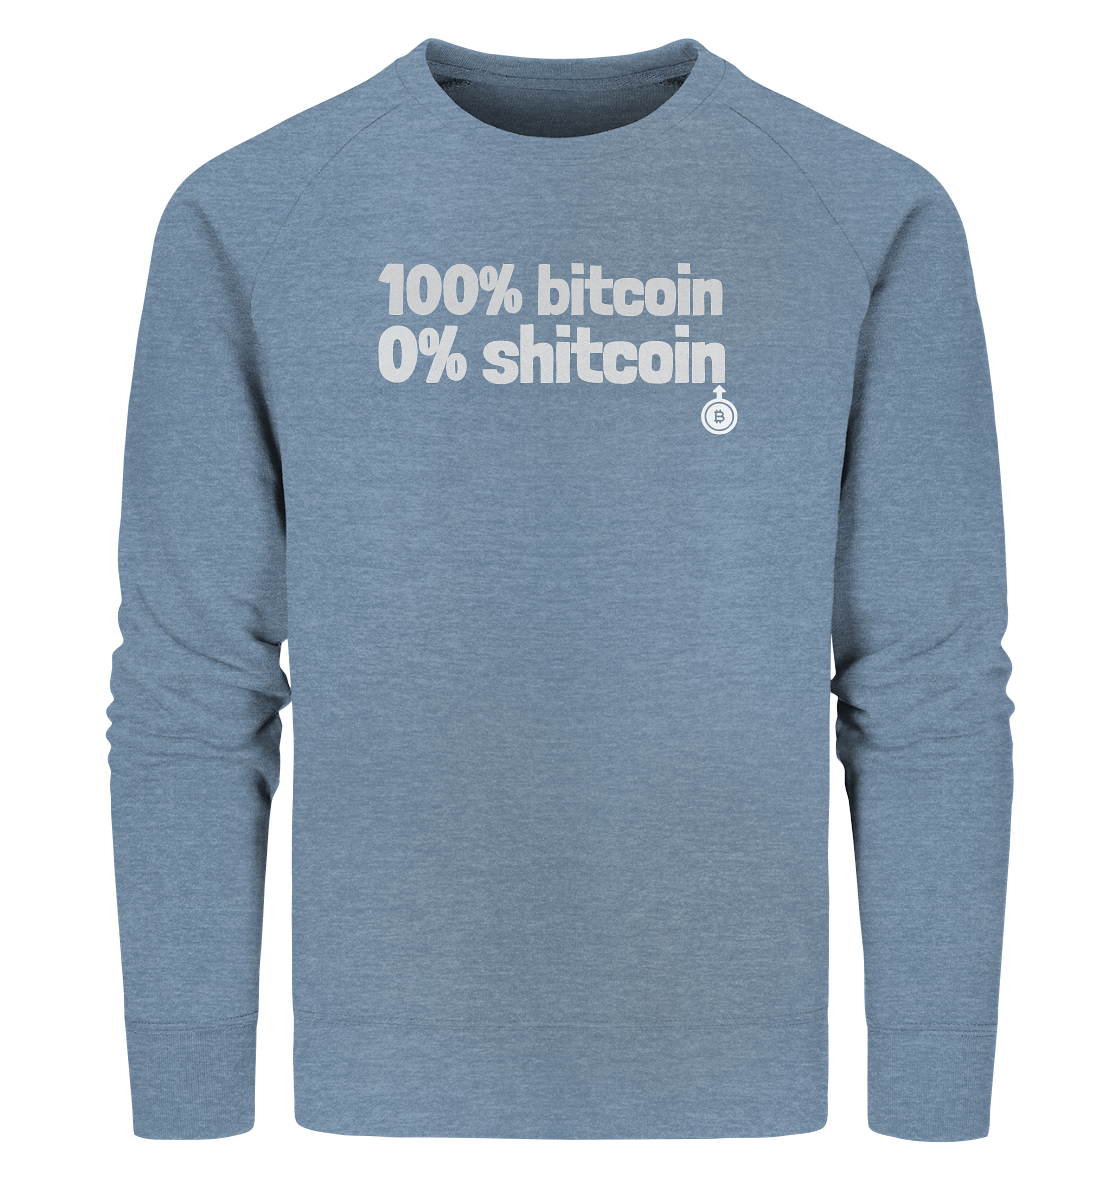 100% bitcoin - 0% shitcoin  - Organic Sweatshirt